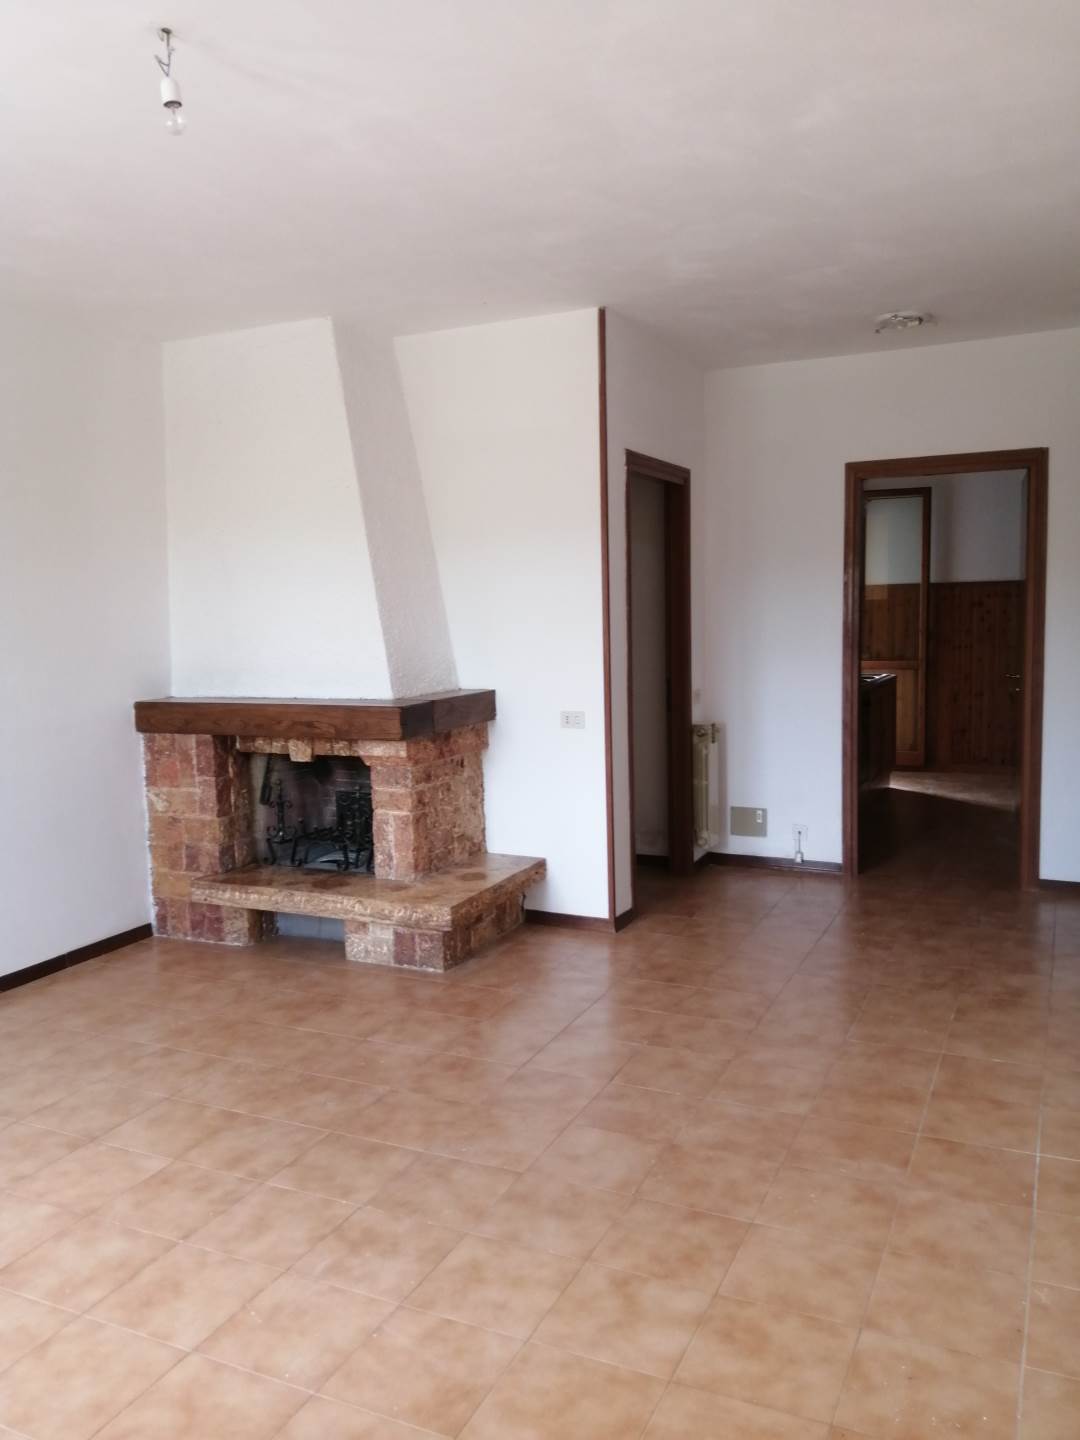 Appartamento in vendita a Pomarance, 4 locali, prezzo € 75.000 | PortaleAgenzieImmobiliari.it